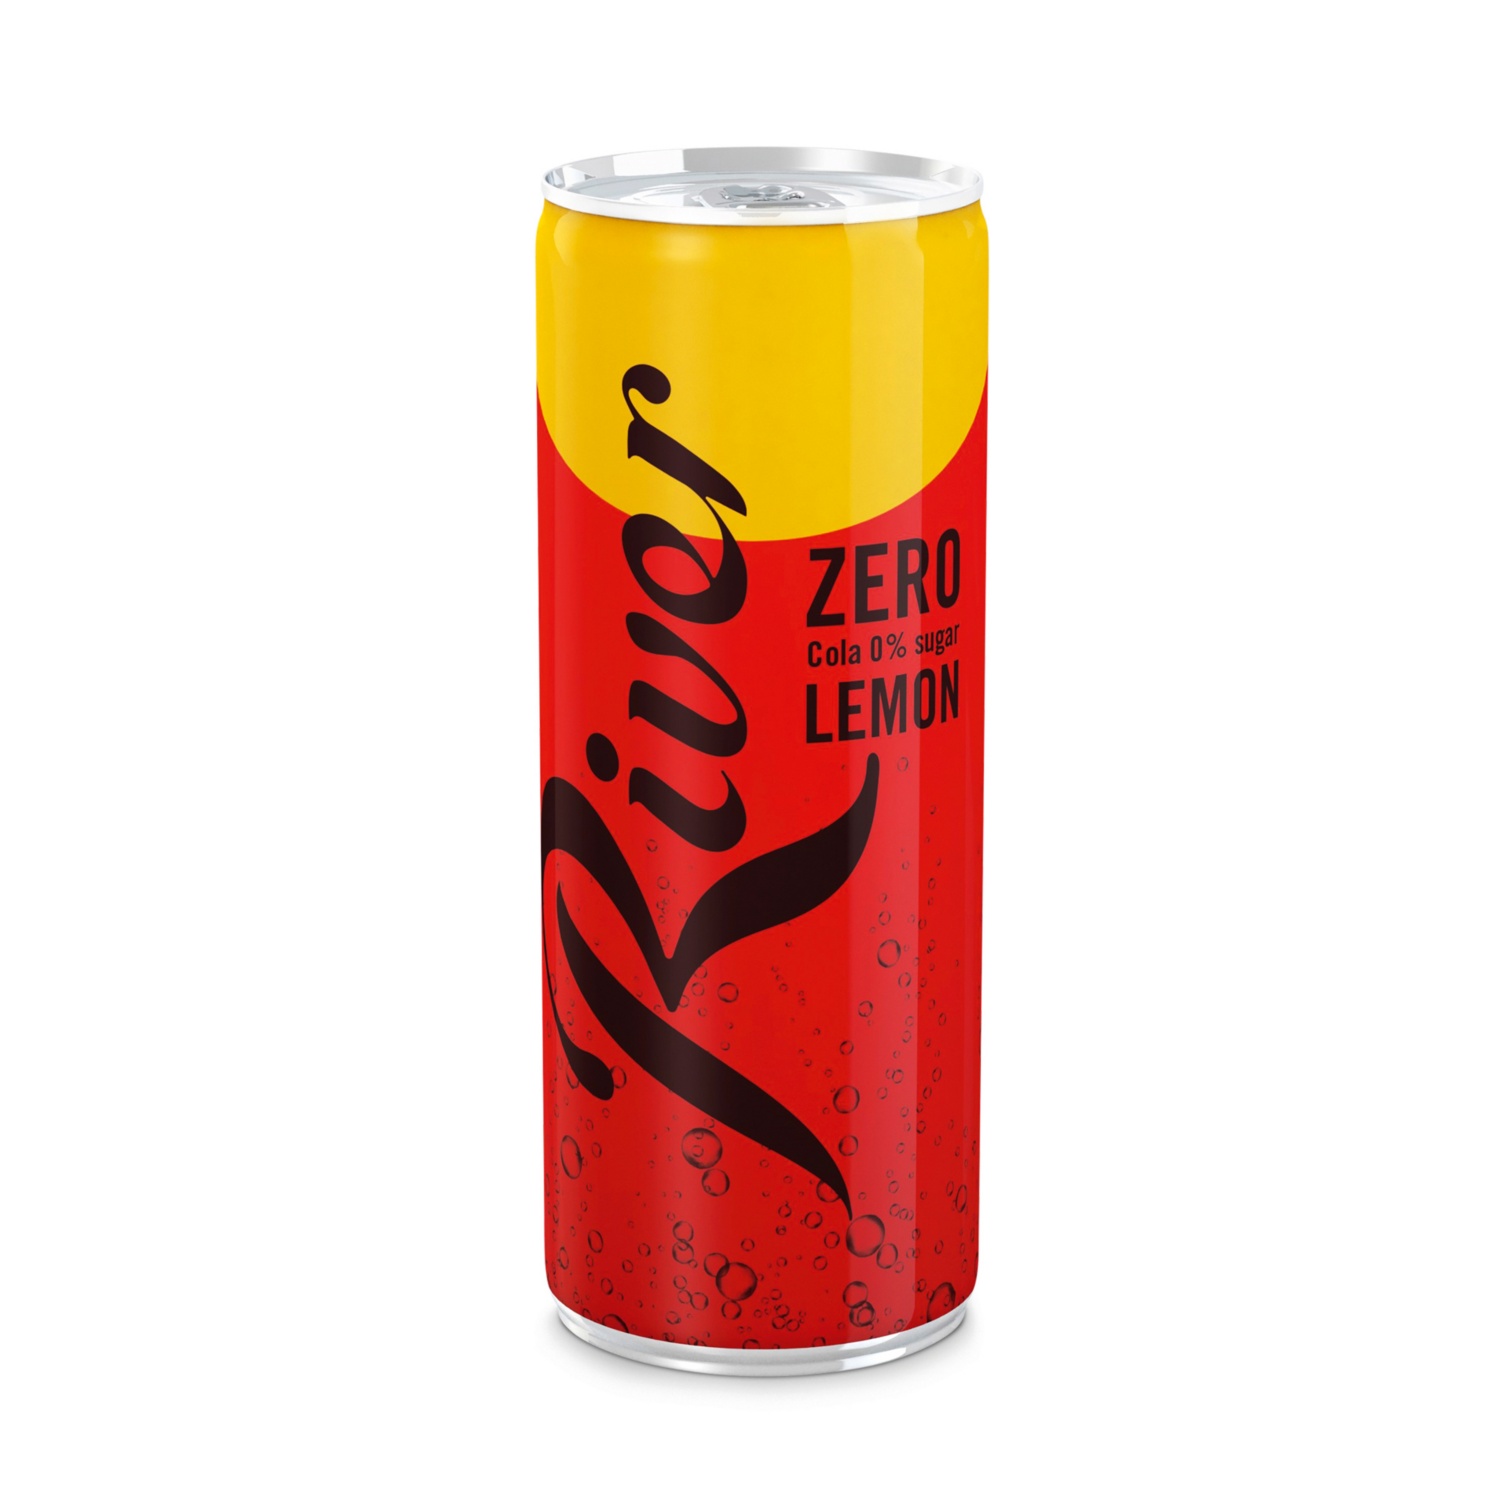 RIVER Cola, Lemon Zero